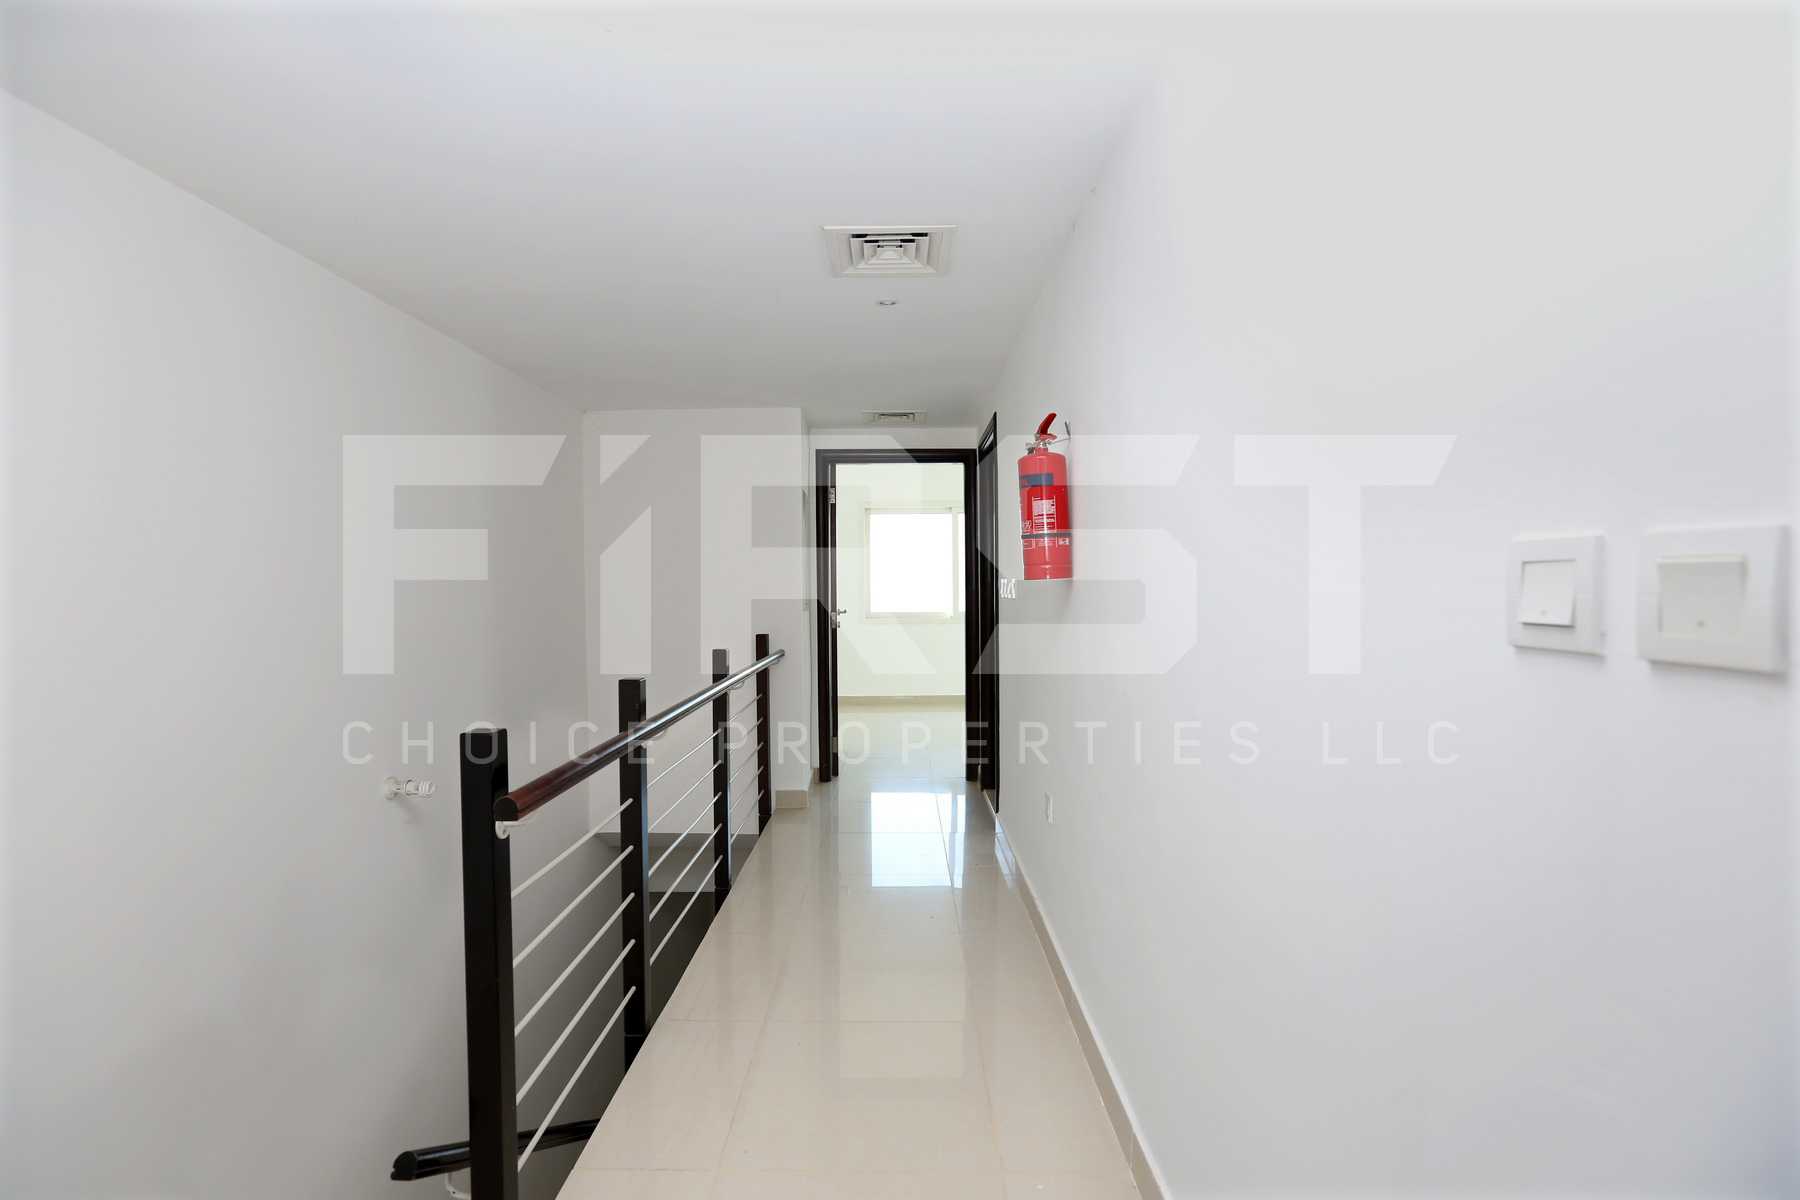 Internal Photo of 2 Bedroom Villa in Al Reef Villas  Al Reef Abu Dhabi UAE 170.2 sq.m 1832 sq.ft (8).jpg